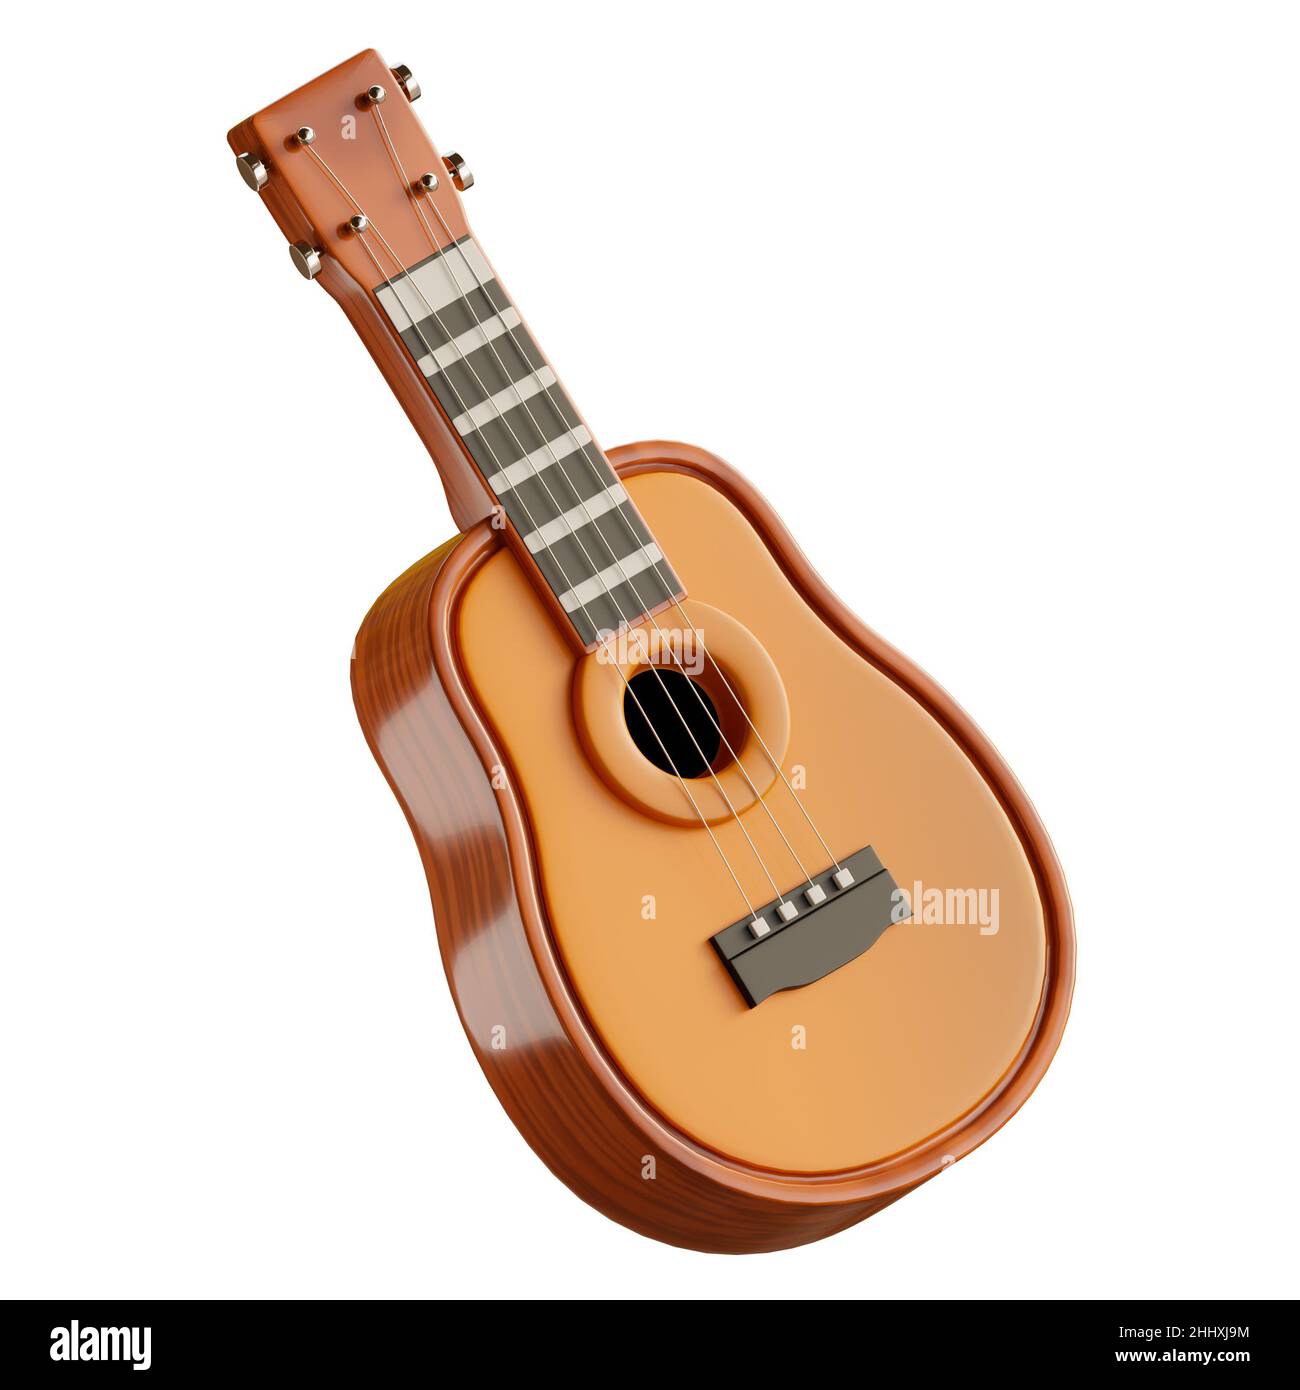 Wooden acoustic guitar icon cartoon Banque d'images détourées - Alamy